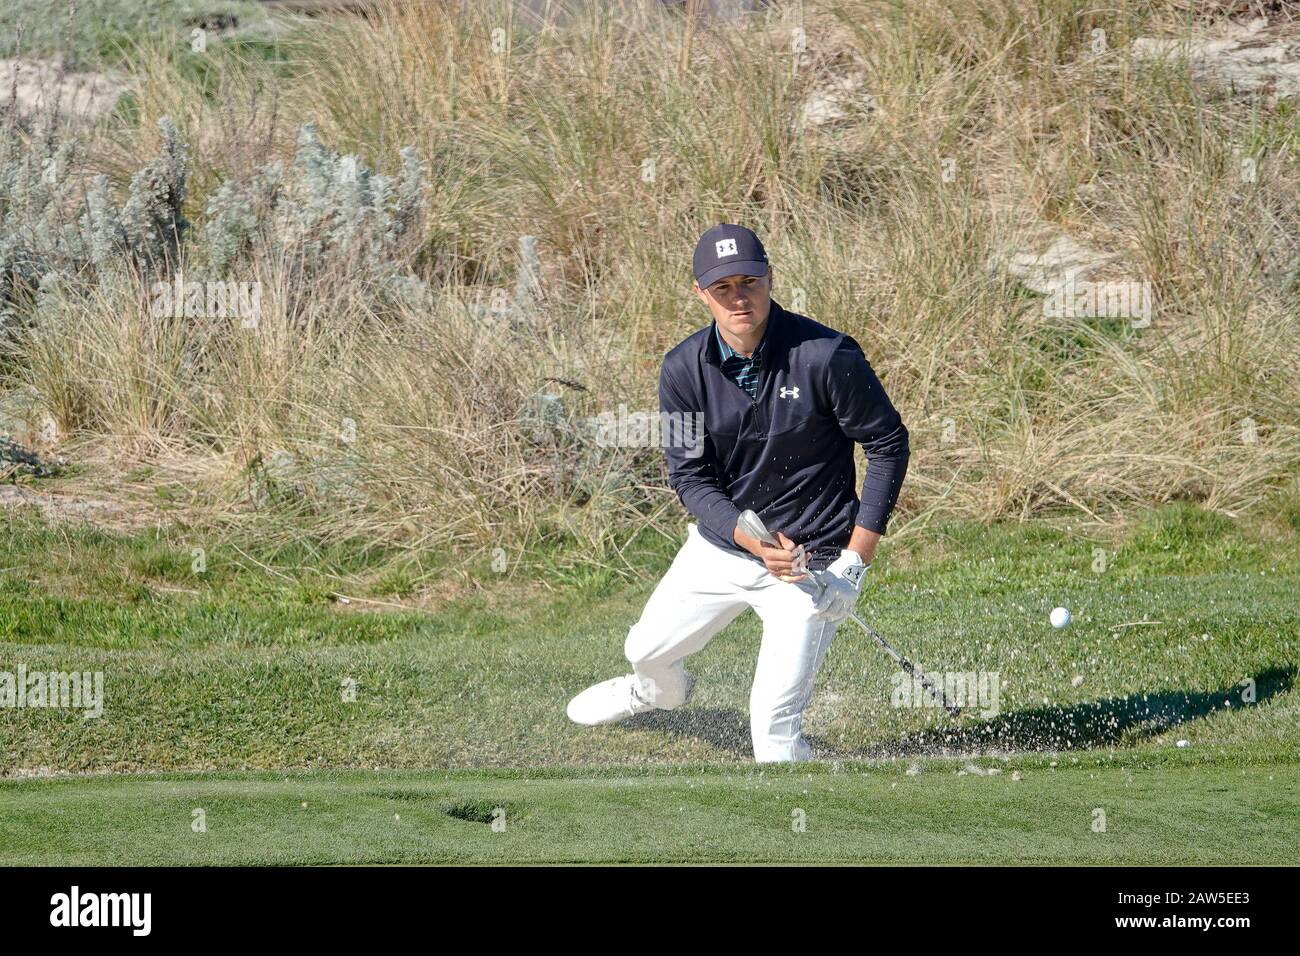 Kieselstrand, USA. Februar 2020. Monterey, Kalifornien, USA 6. Februar 2020 Jordan Spieth hat am ersten Tag des AT&T Pro-Am PGA Golf Events in Pebble Beach Credit einen Testbunkerschuss auf dem 4. Green in Spyglass Hill gemacht: Motofoto/Alamy Live News Stockfoto